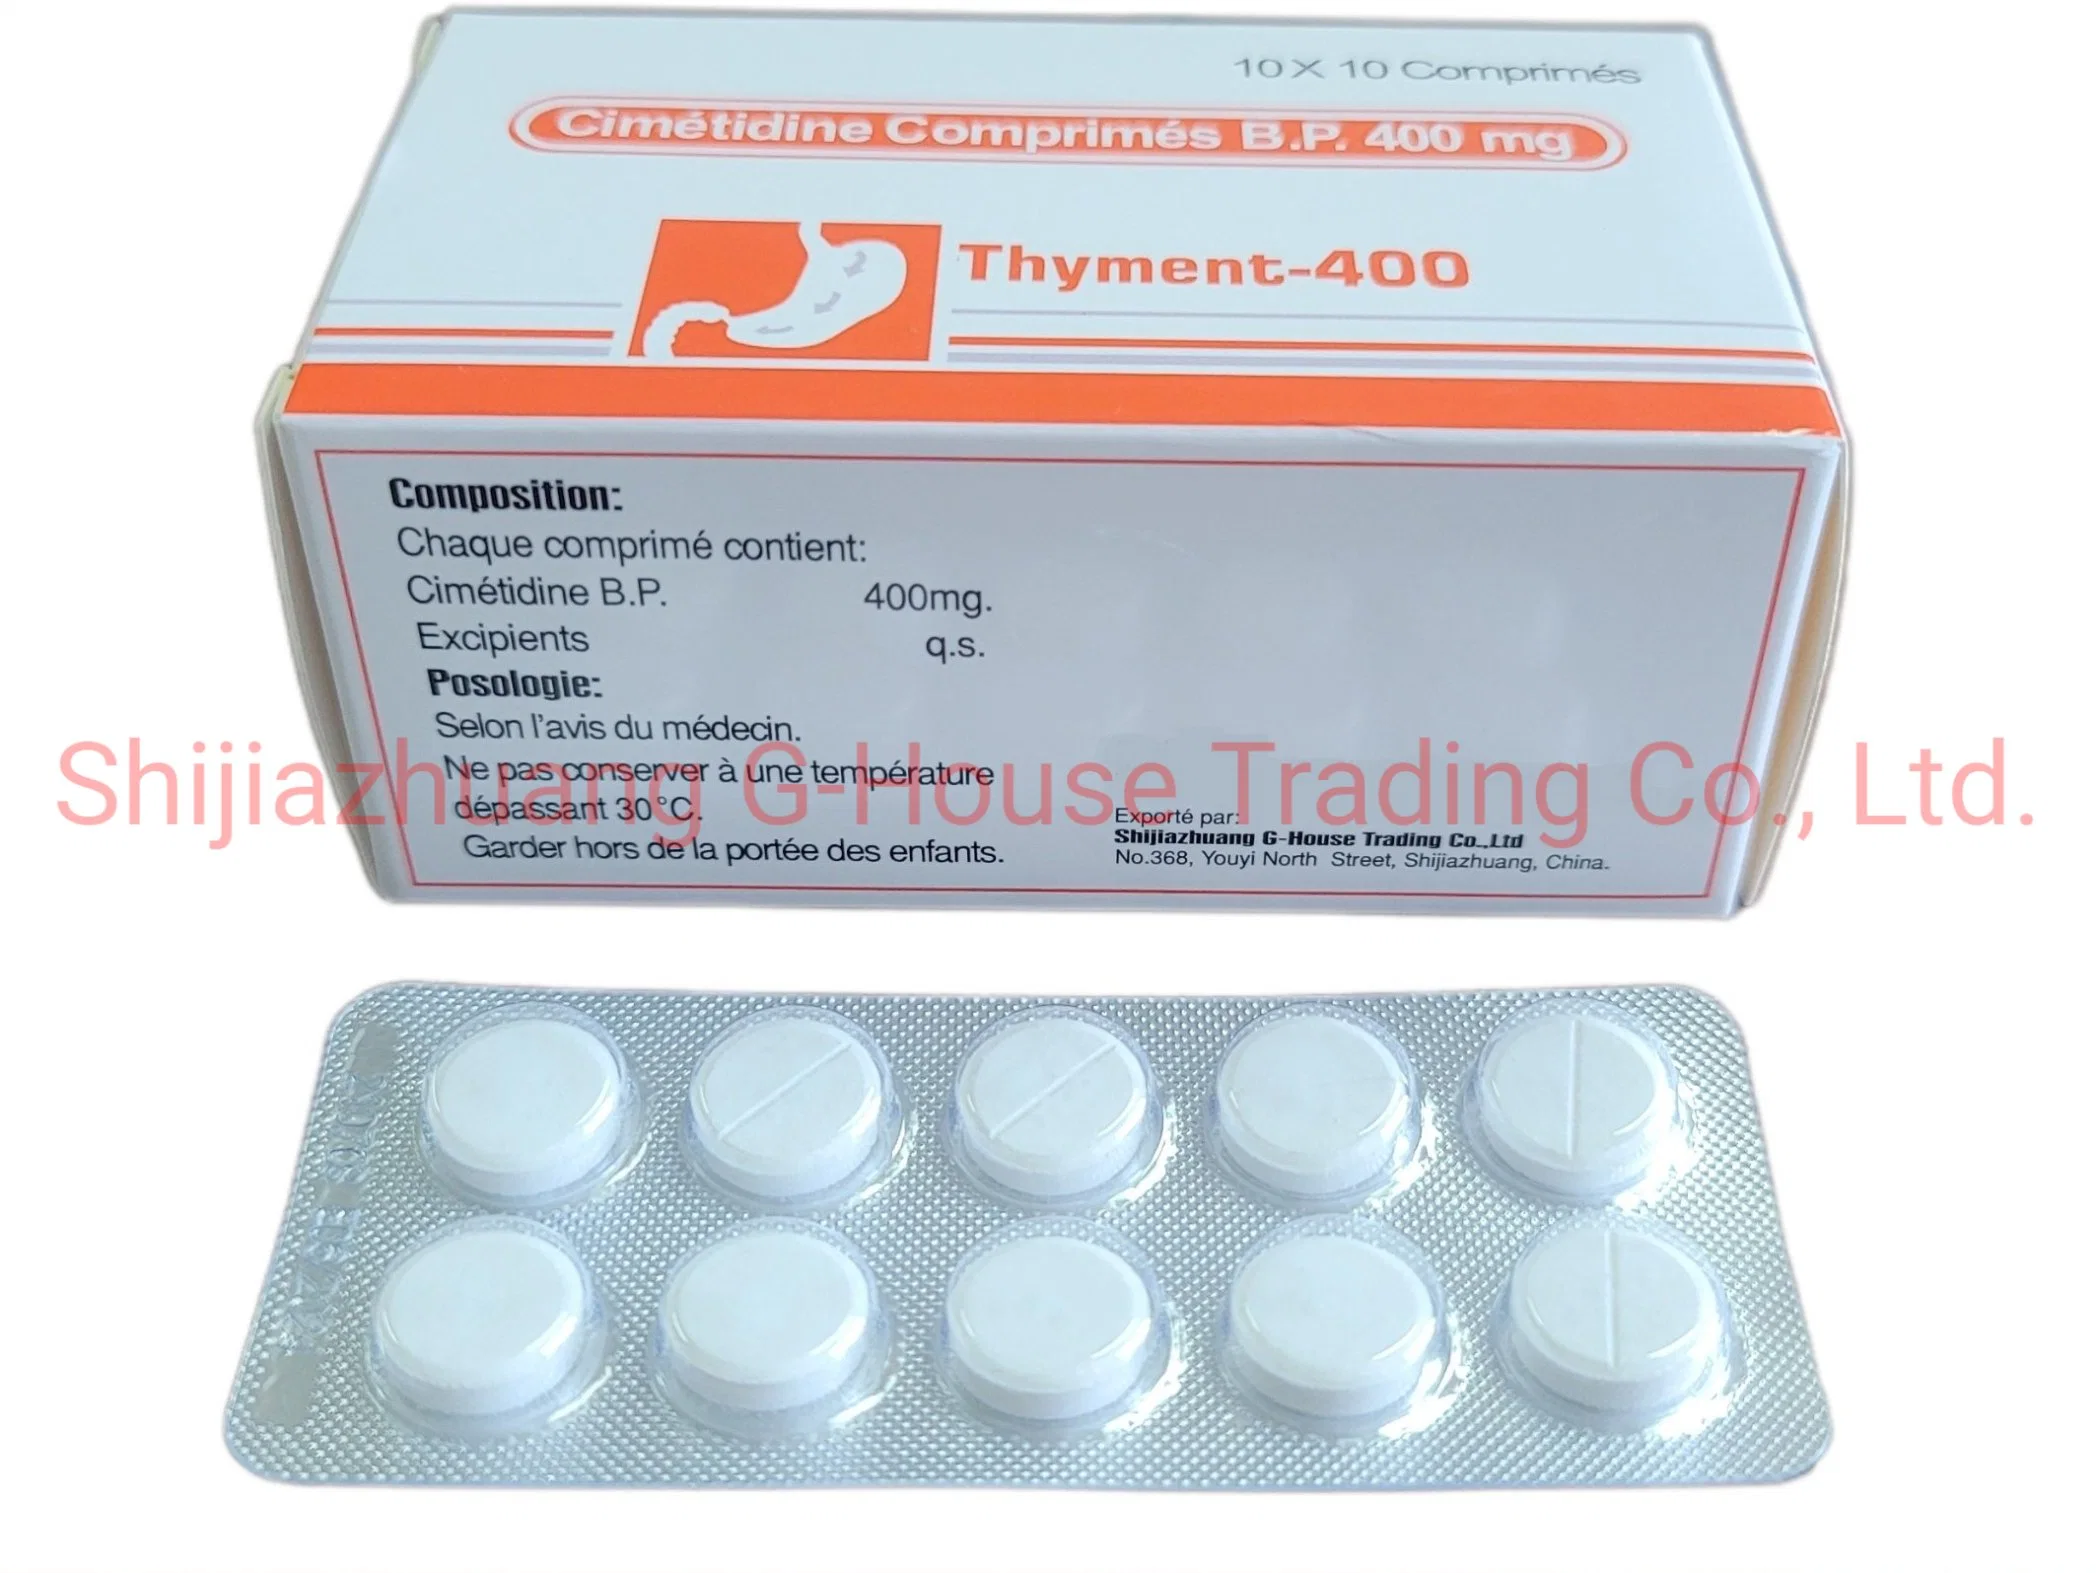 La cimetidina medicamentos Gastrointestinal farmacéuticas medicina terminado